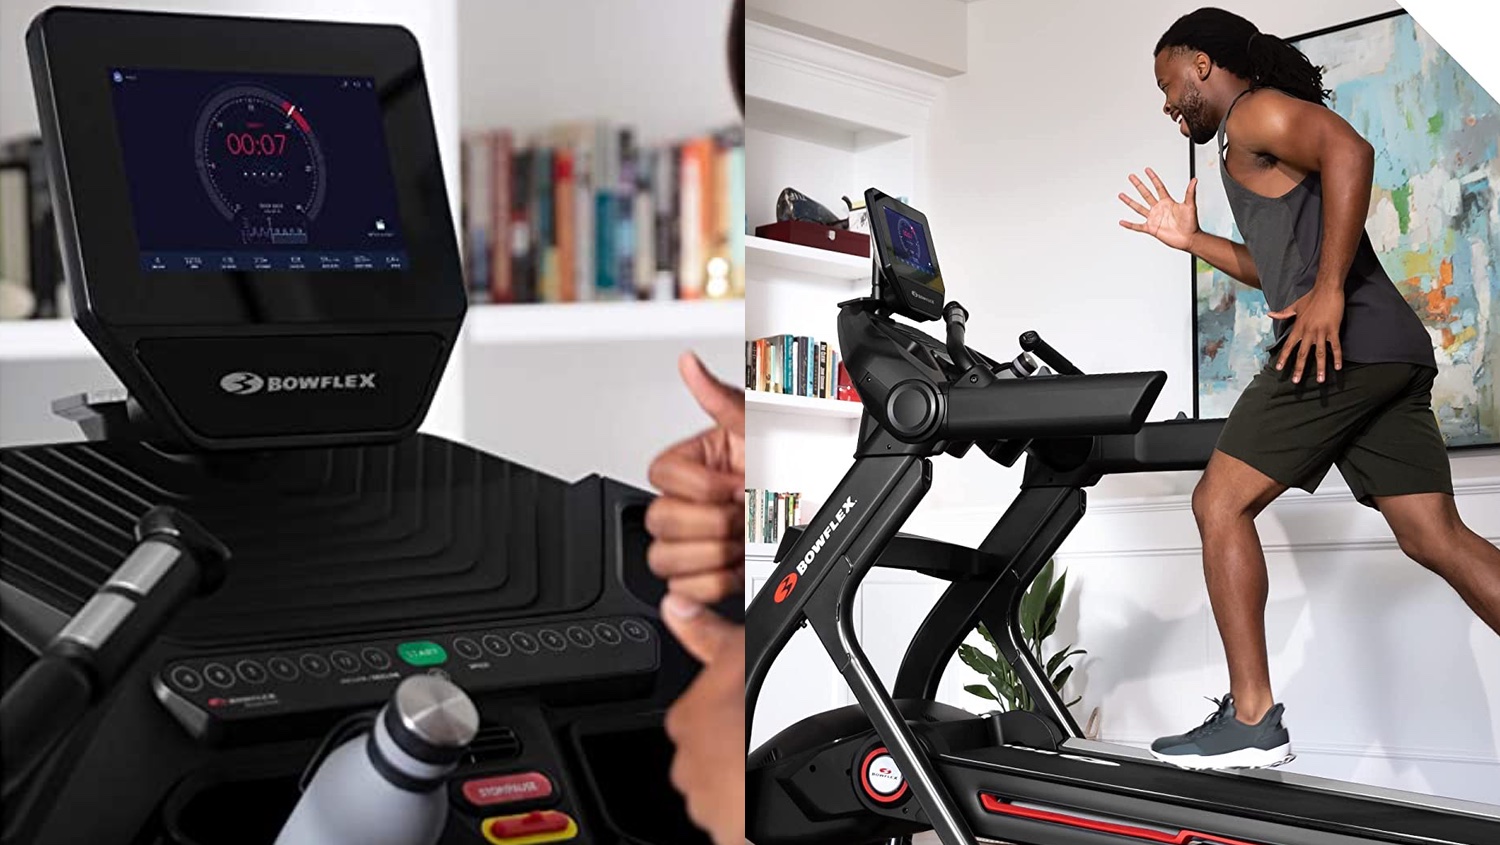 Bowflex's T10 treadmill